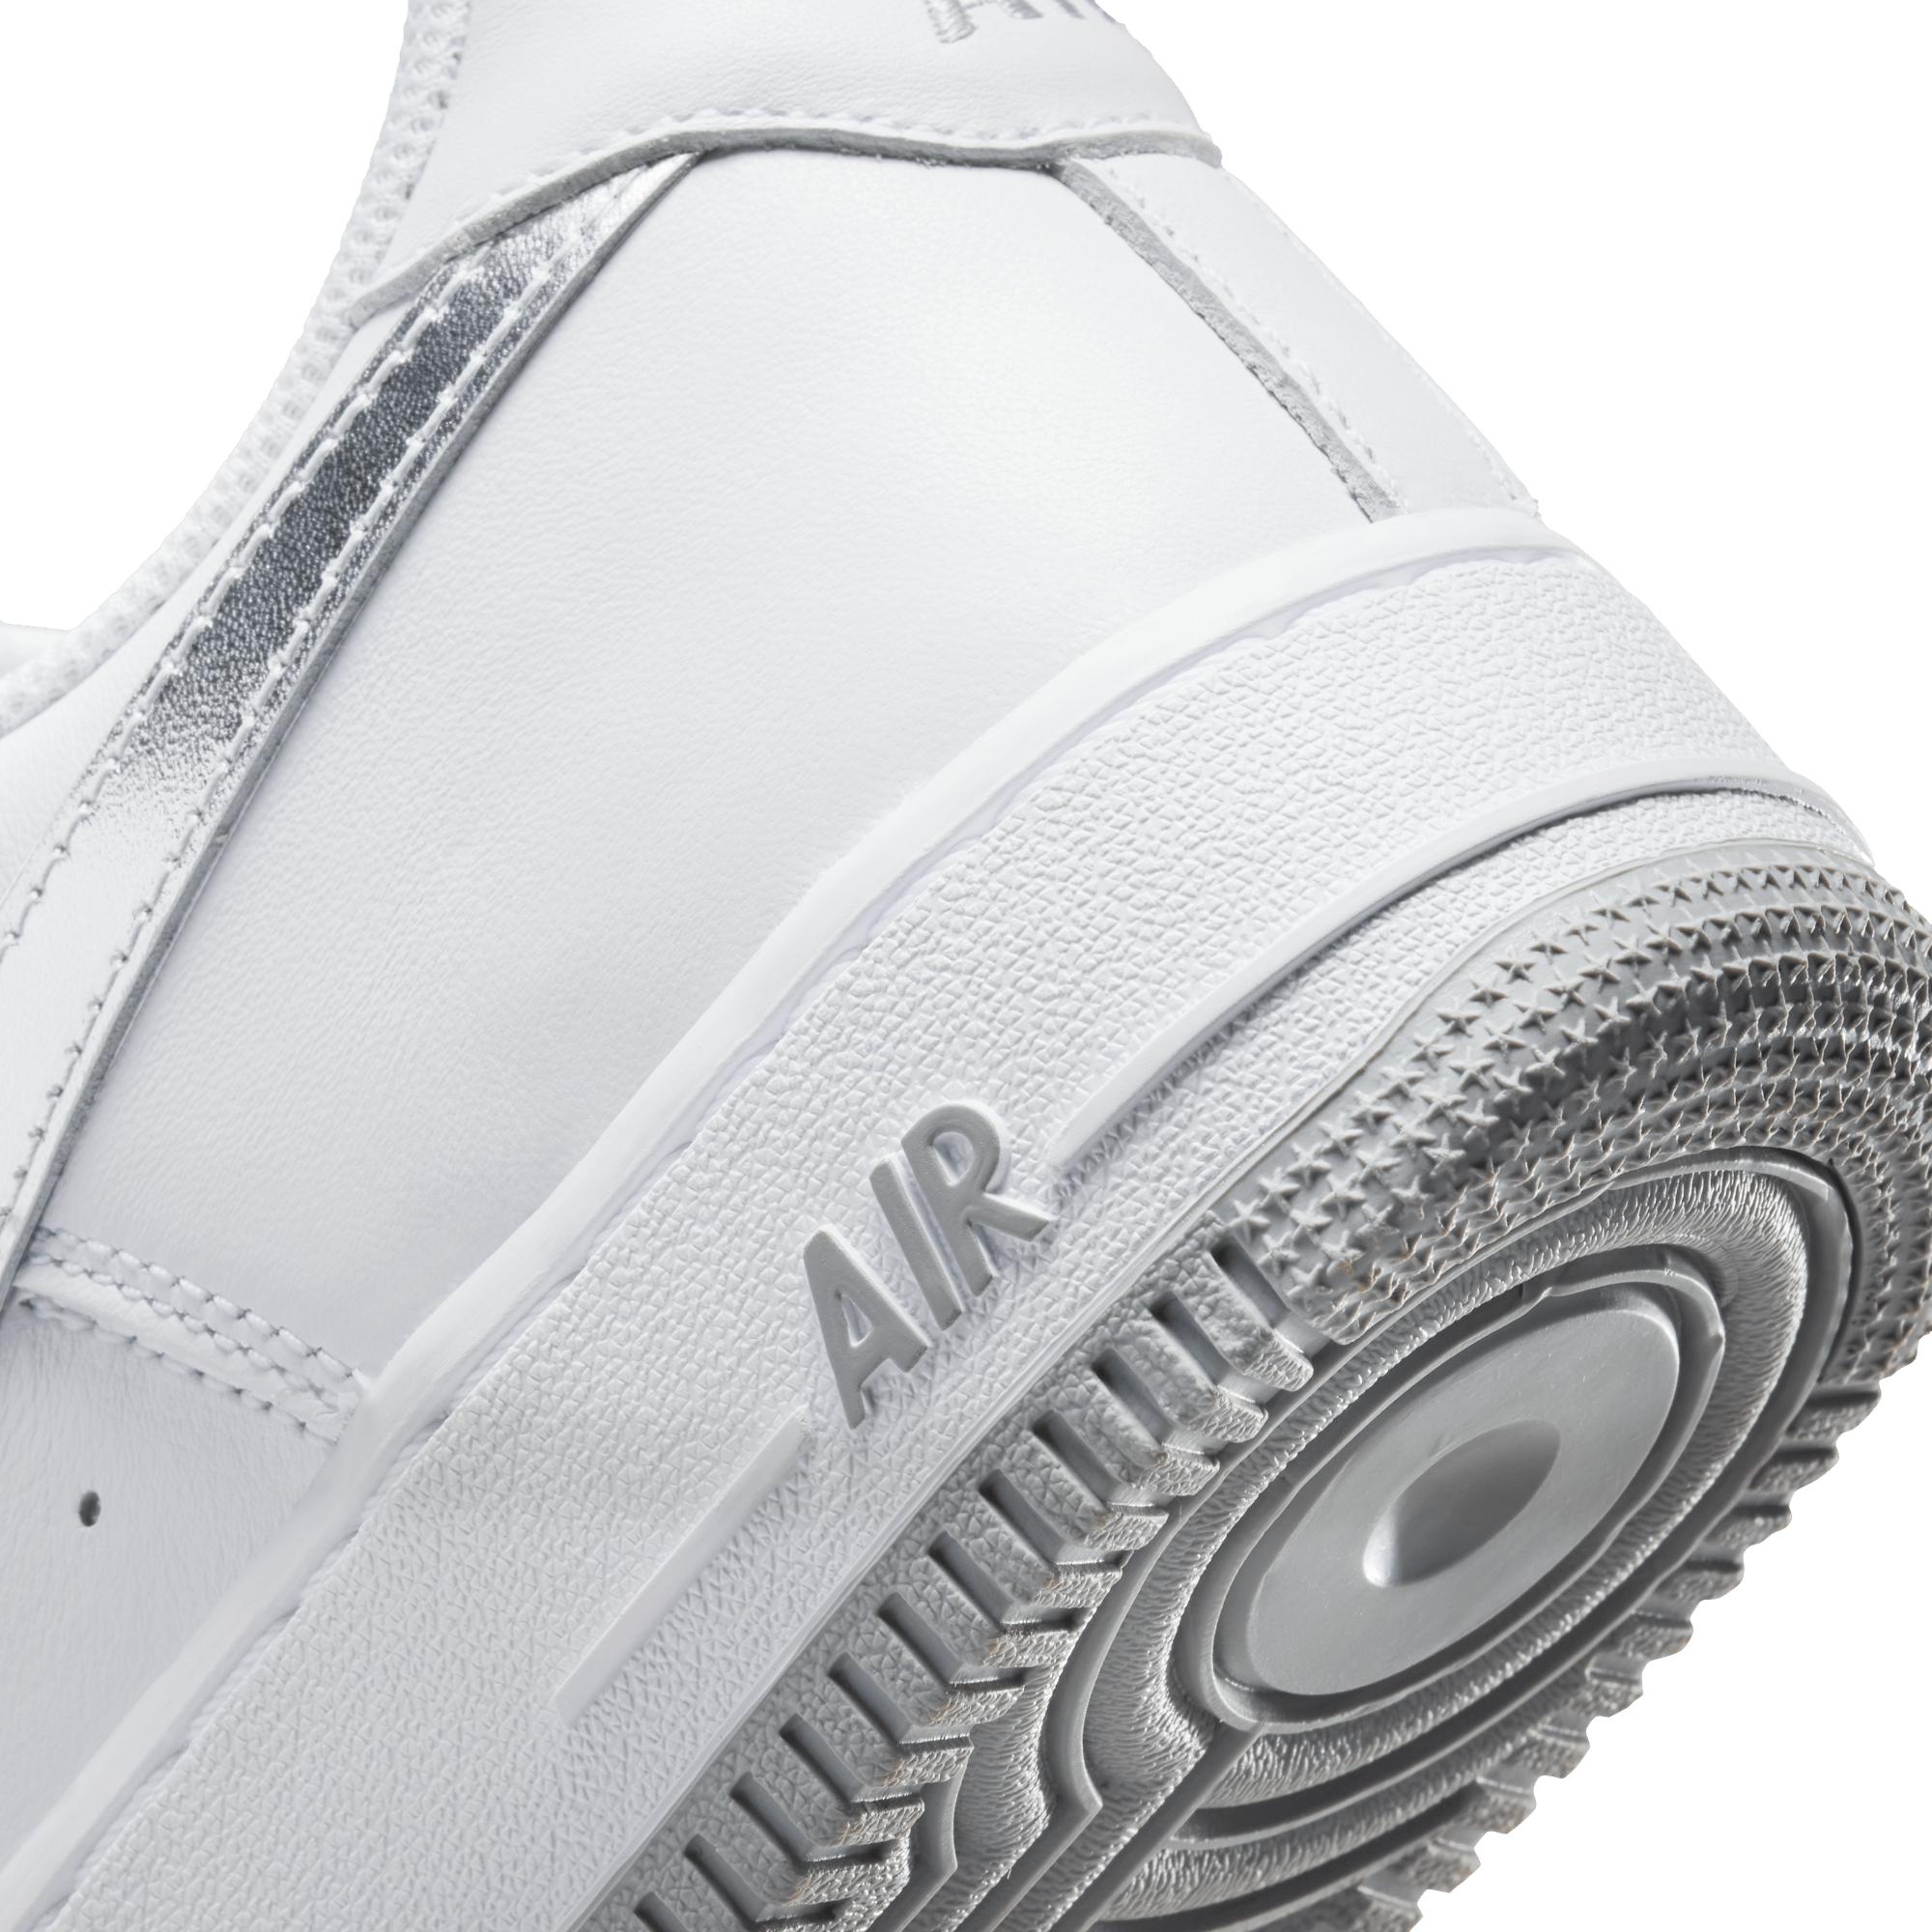 Nike Footwear Nike Air Force 1 Low Retro -  Men's